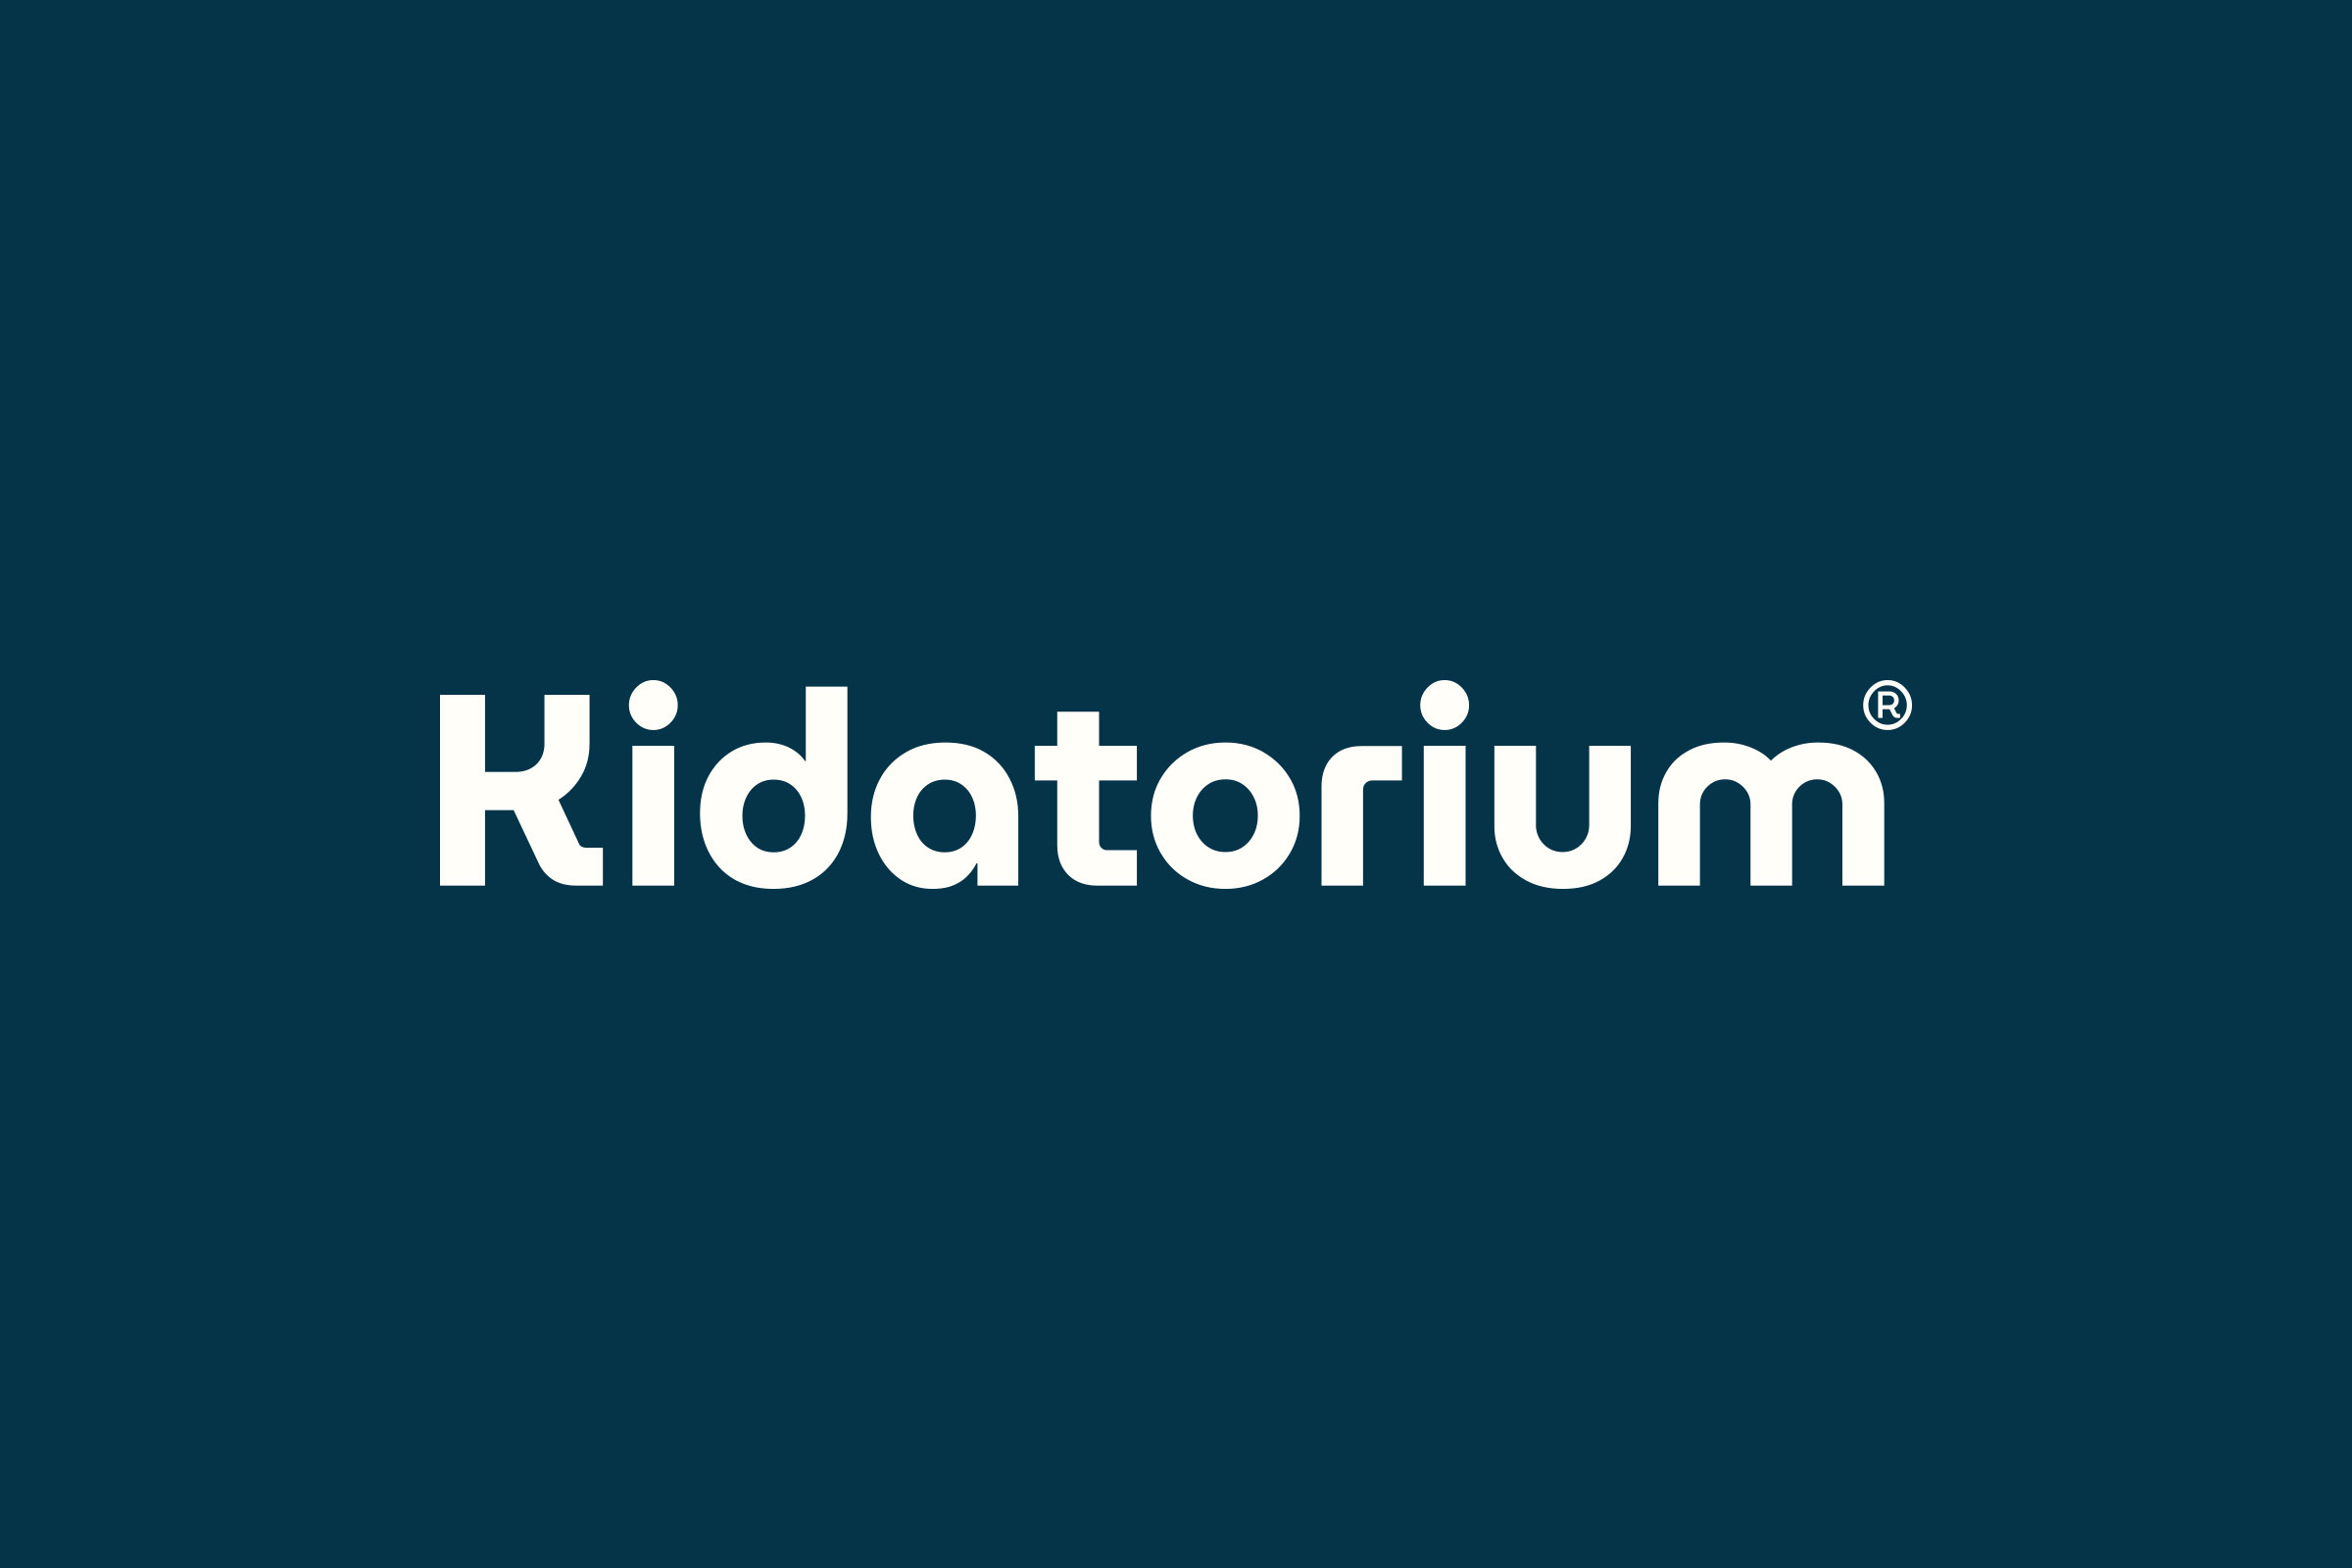 Kidatorium Branding